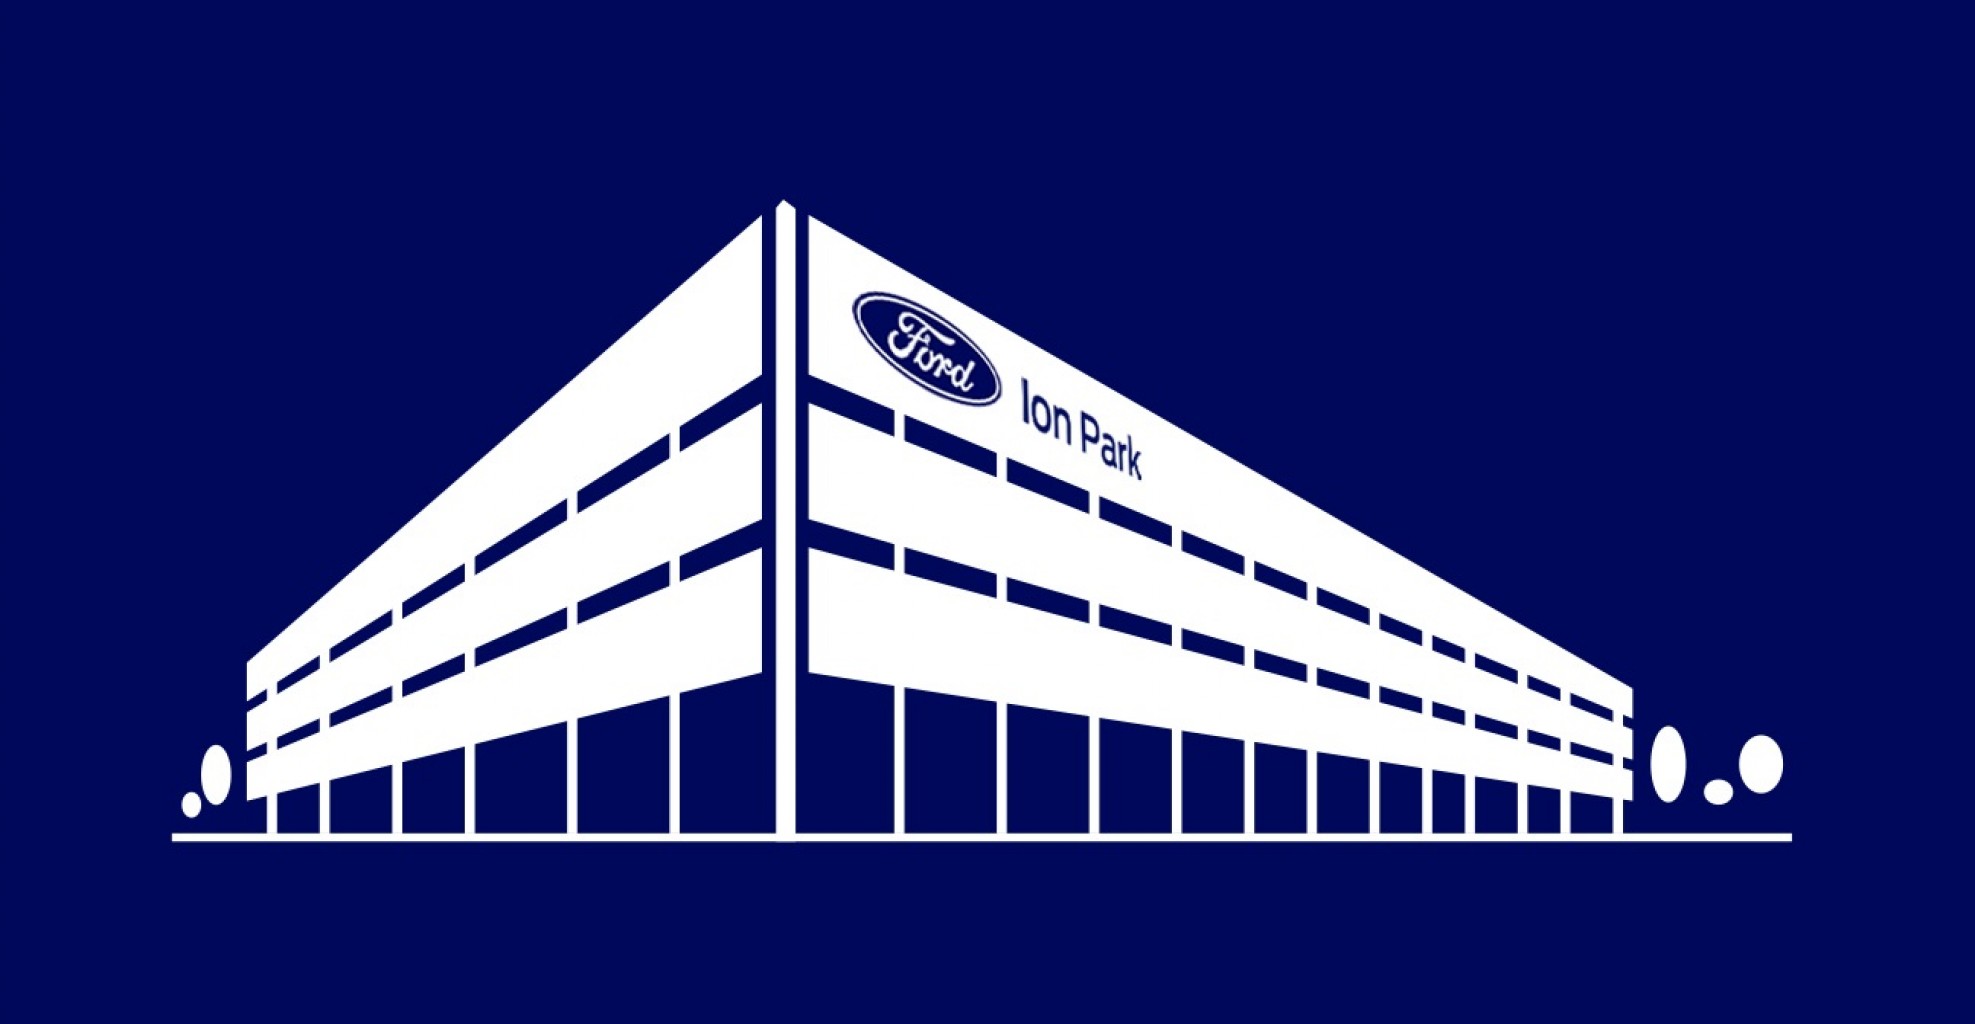 El "Ion Park" será el centro mundial por excelencia de las baterías de Ford